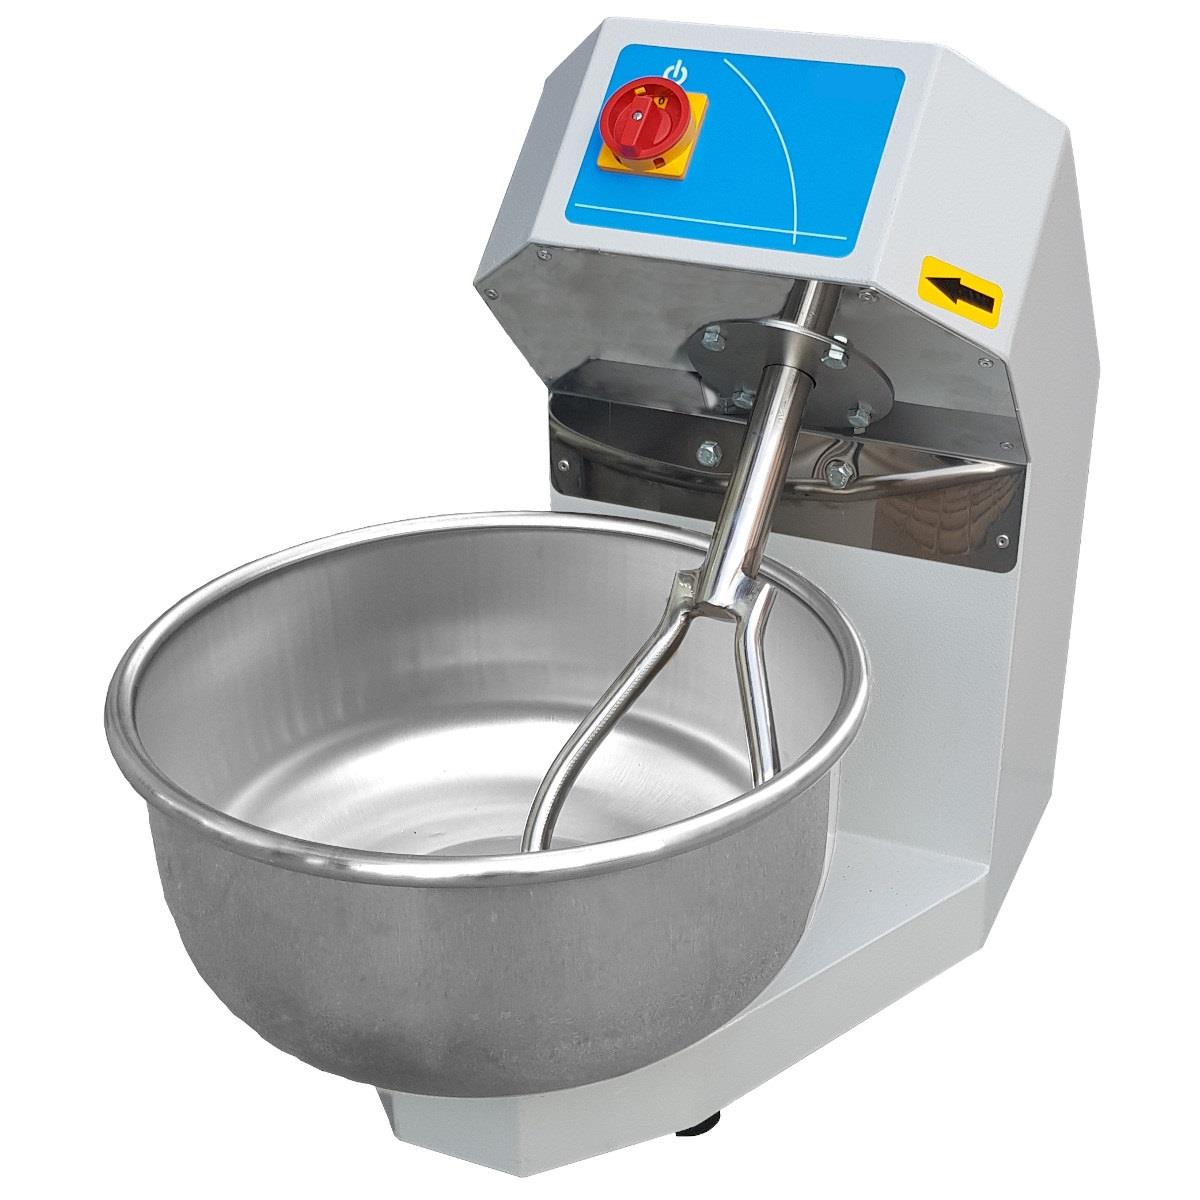 10 Kilogramlık Hamur Yoğurma Makinesi | Sanayi Hamur Yoğurma Makinası  Fiyatları ve Modelleri